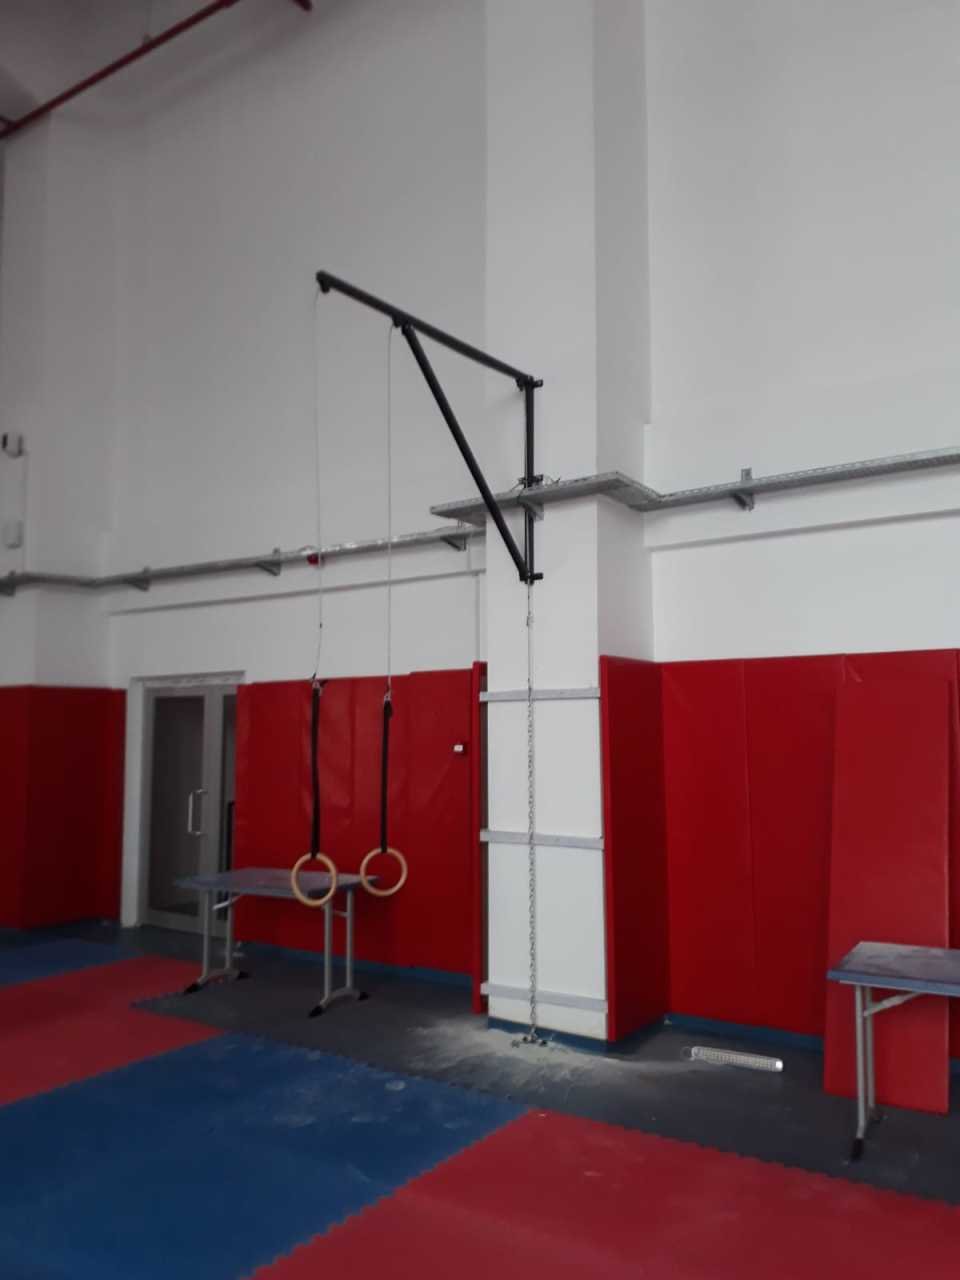 Jimnastik Halka Aleti JİM-155